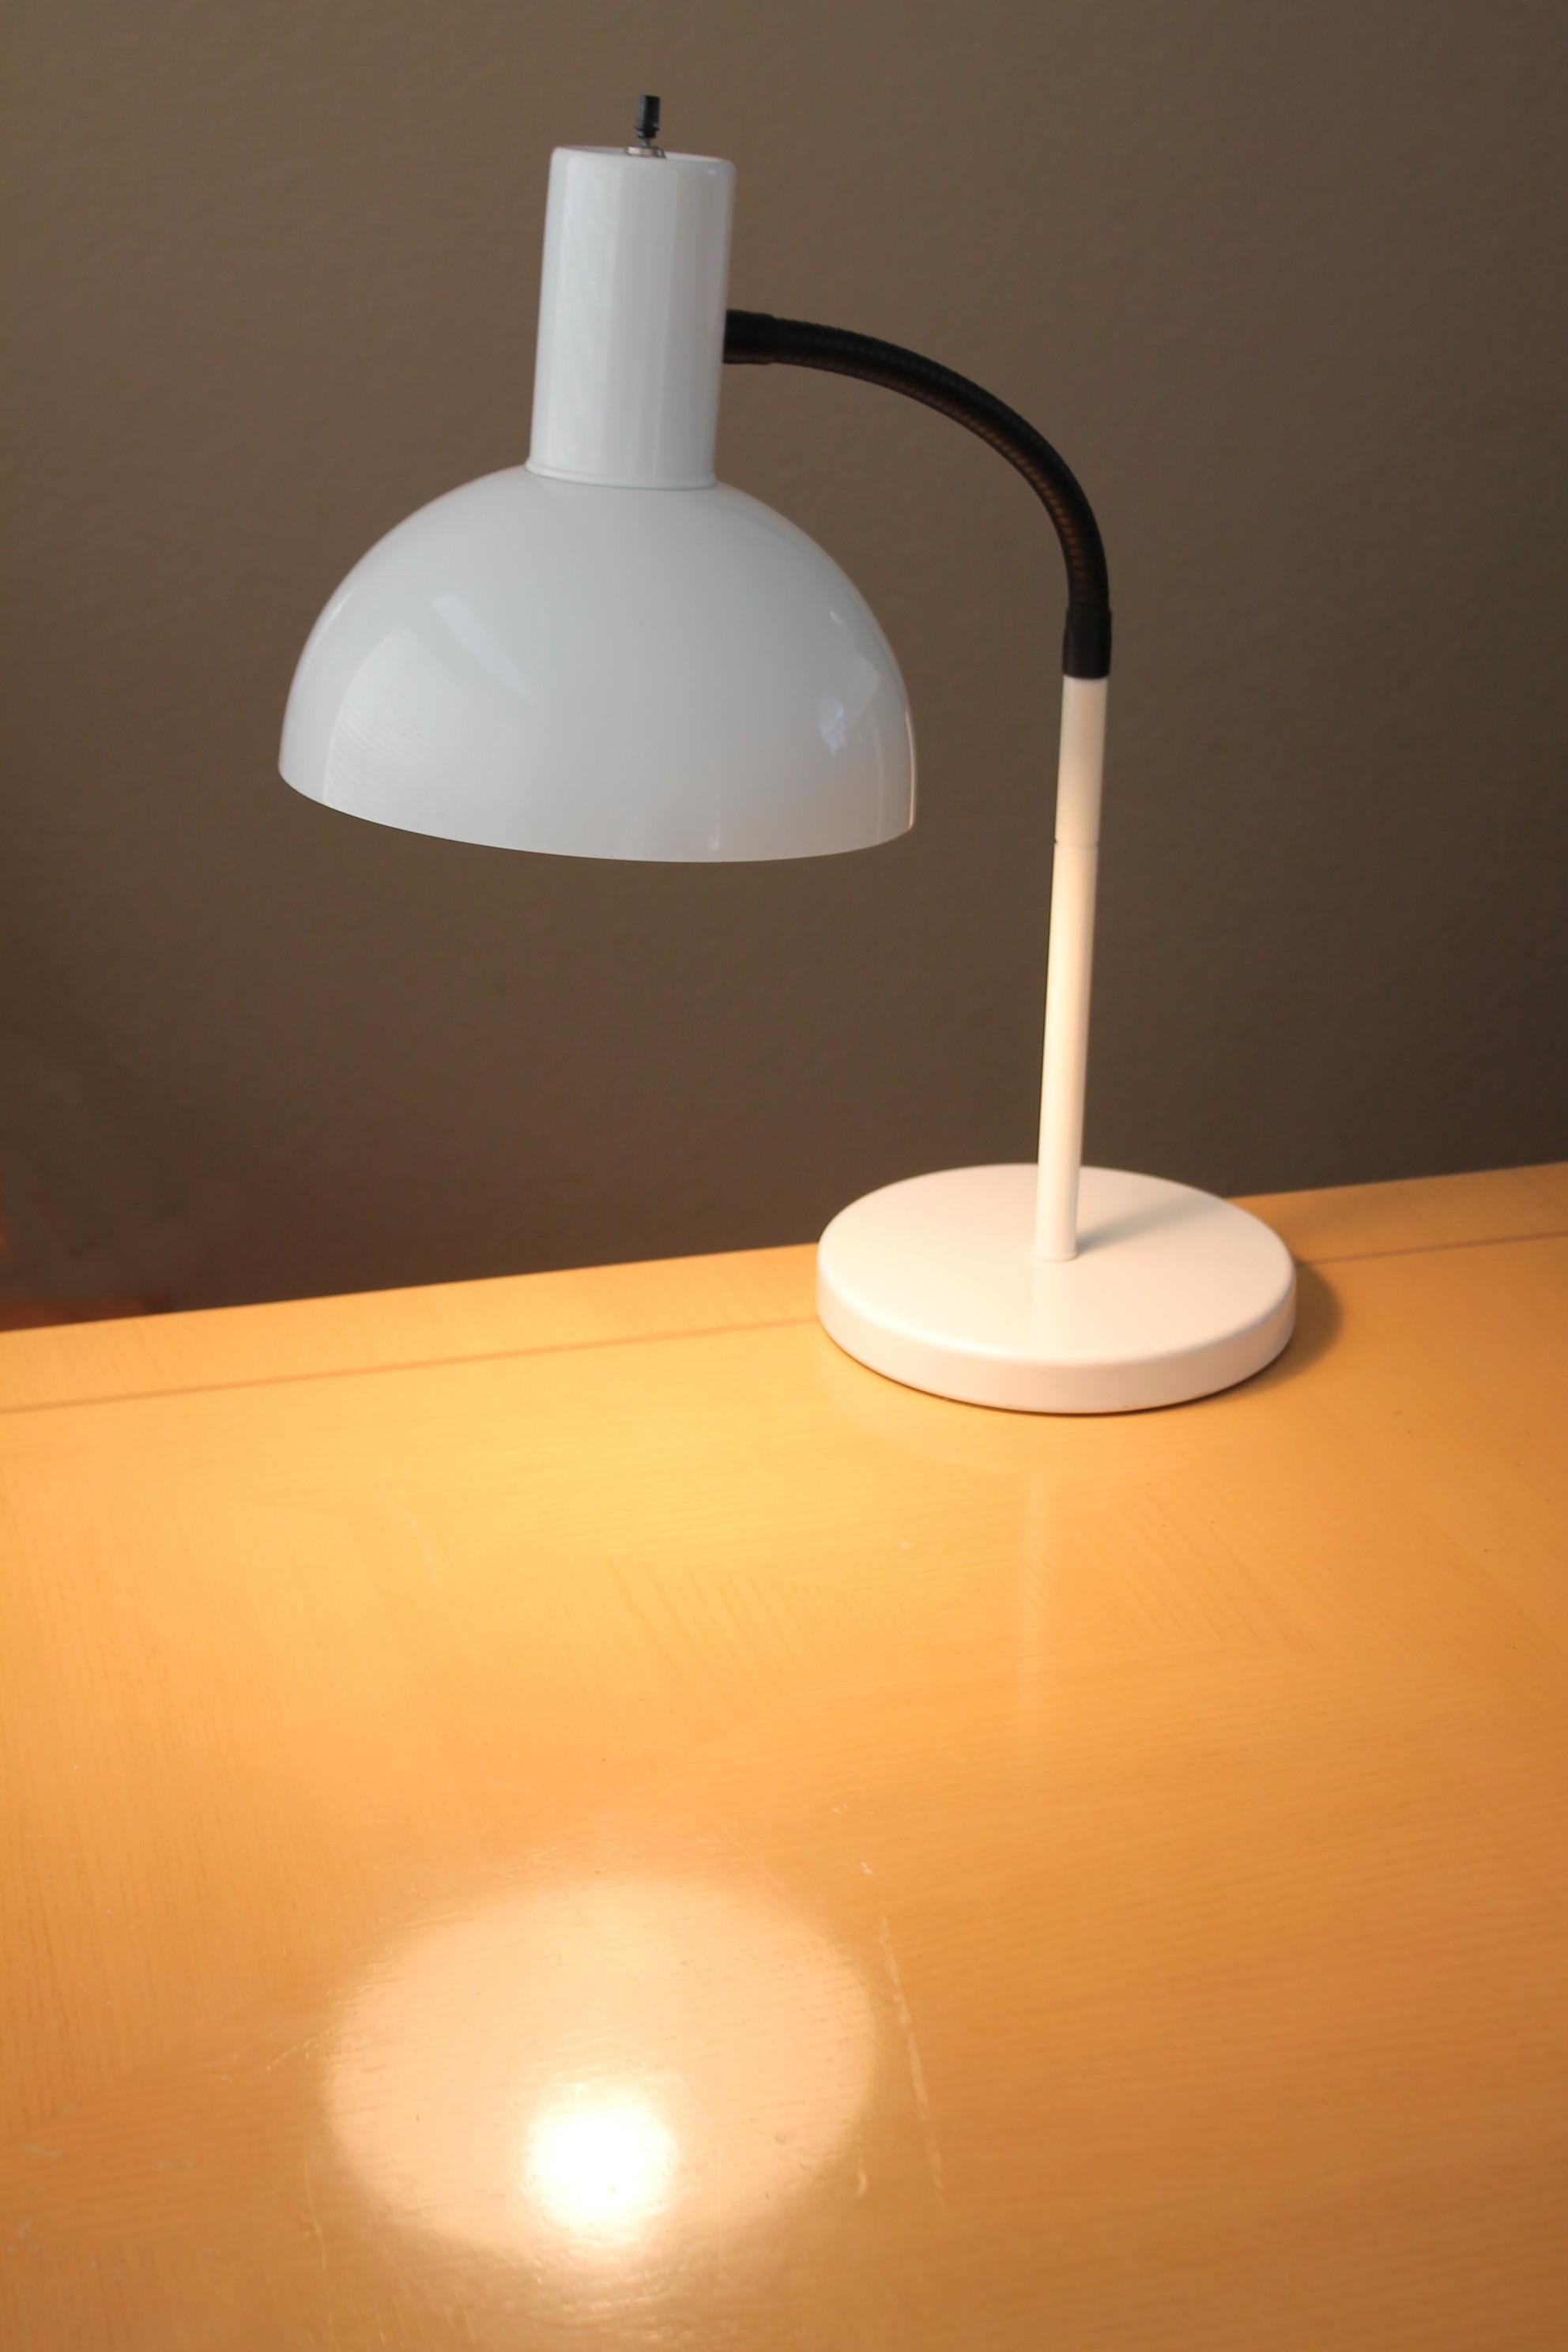 Minze!


Atemberaubend Weiß & Schwarz
Sonneman-Gelenk
Schreibtisch/Tischlampe

CIRCA 1970

Dies ist ein großartiges Exemplar der ikonischen, beweglichen Schreibtischlampe von Sonneman!  Der große, überdimensionale Schirm passt perfekt zu Fuß und